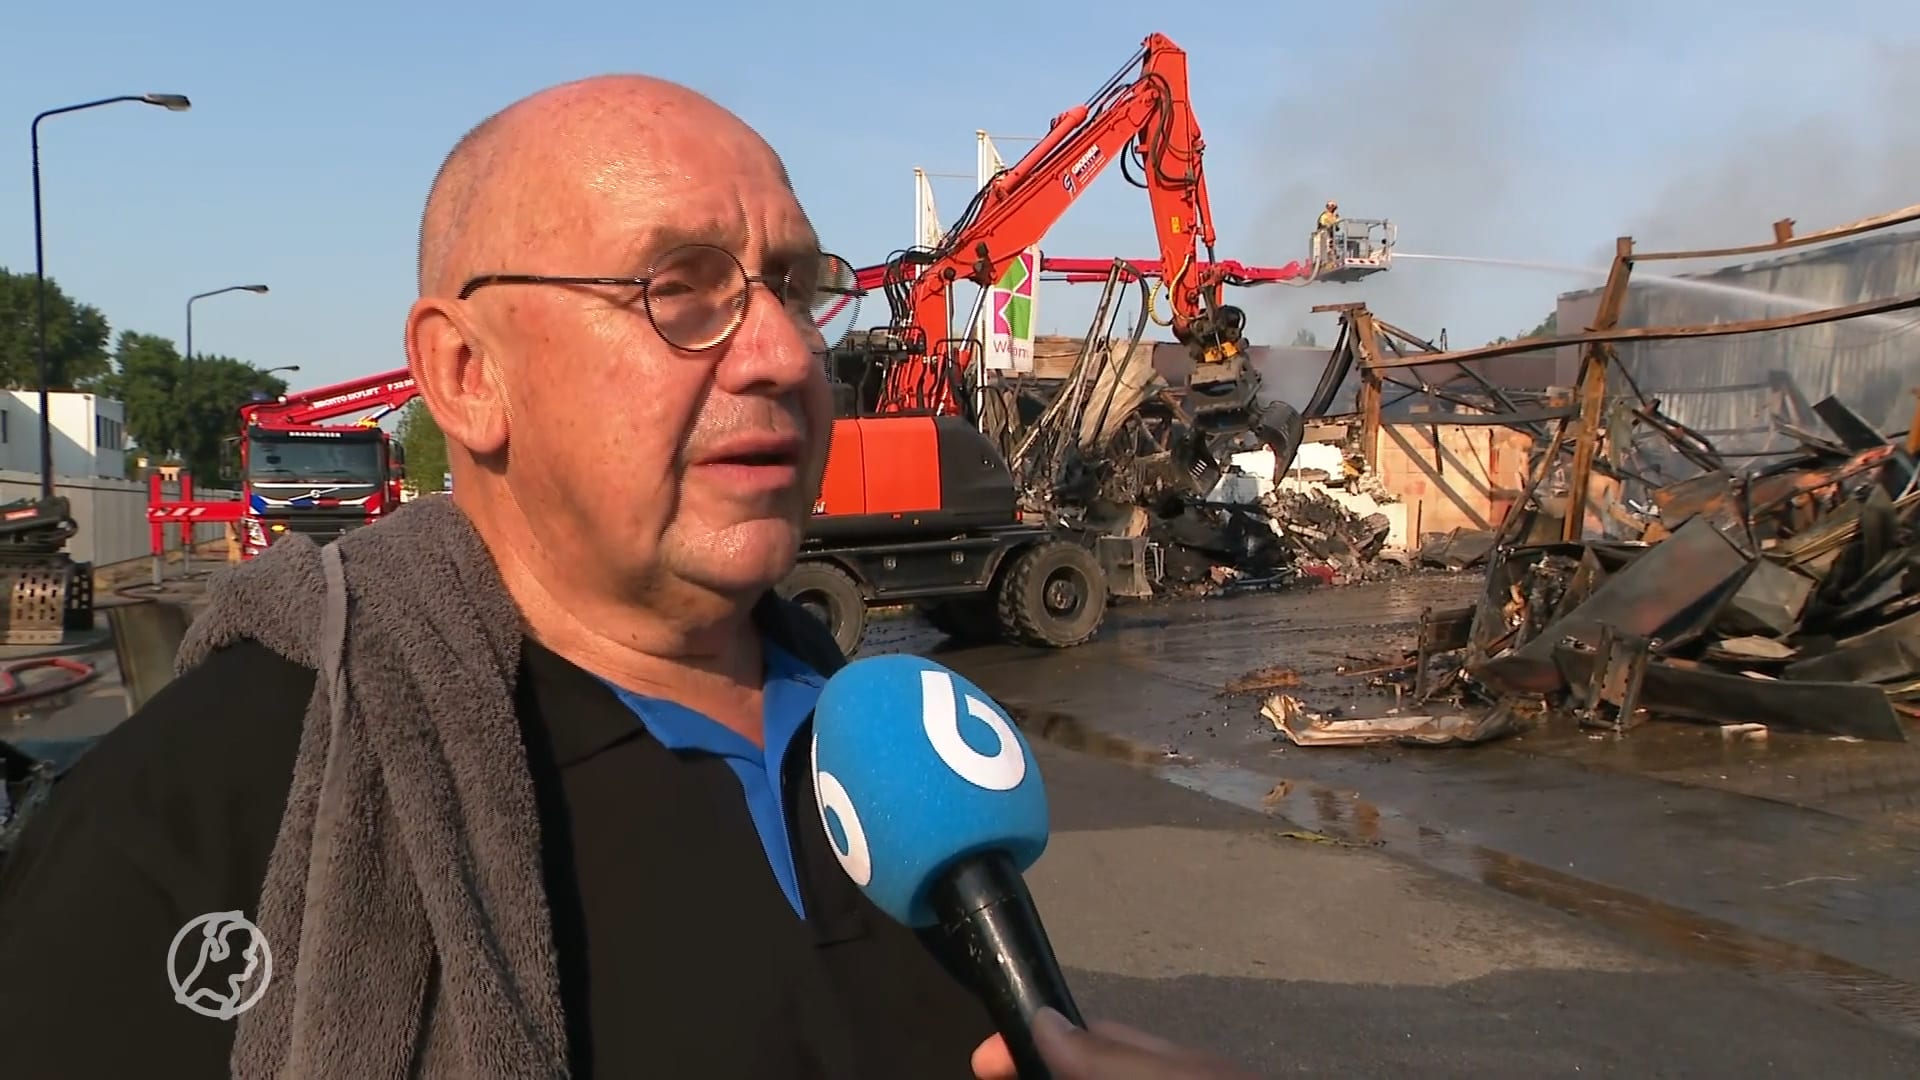 Tranen om verwoeste kringloopwinkel in Veldhoven: 'Dit doet ontzettend zeer'